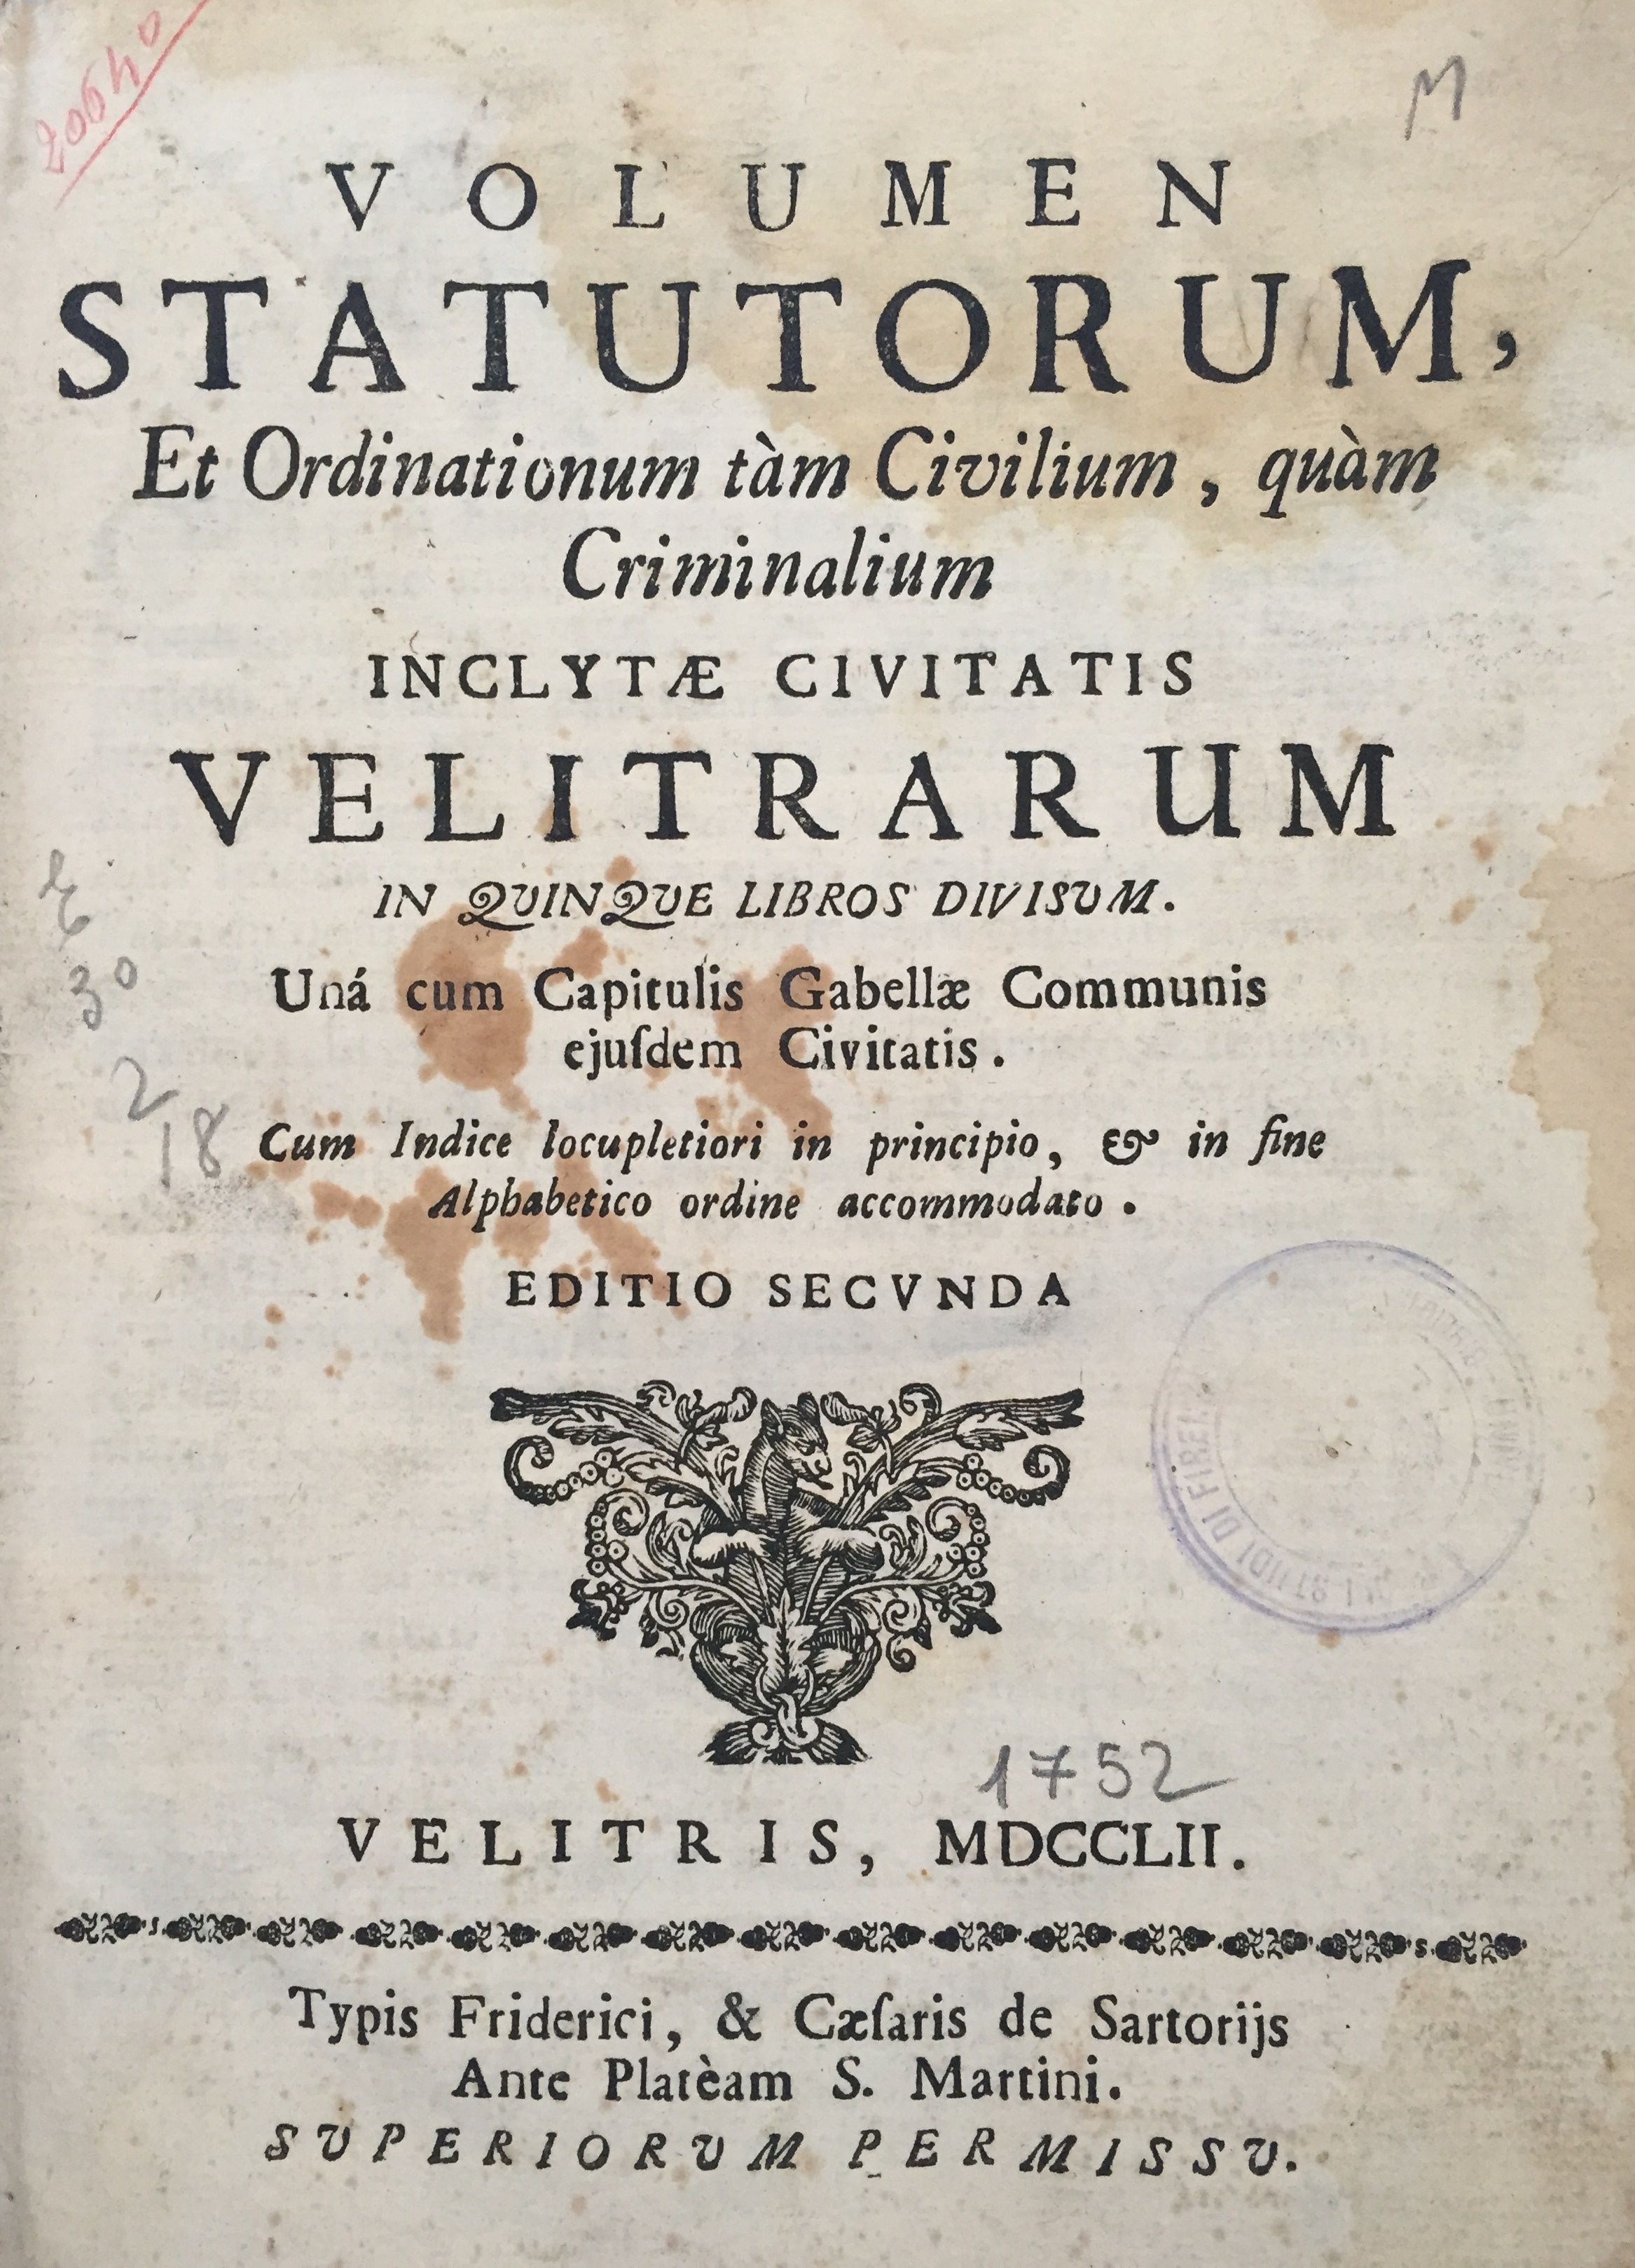 Volumen statutorum, et ordinationum tam civilium, quam criminalium inclytae civitatis Velitrarum 